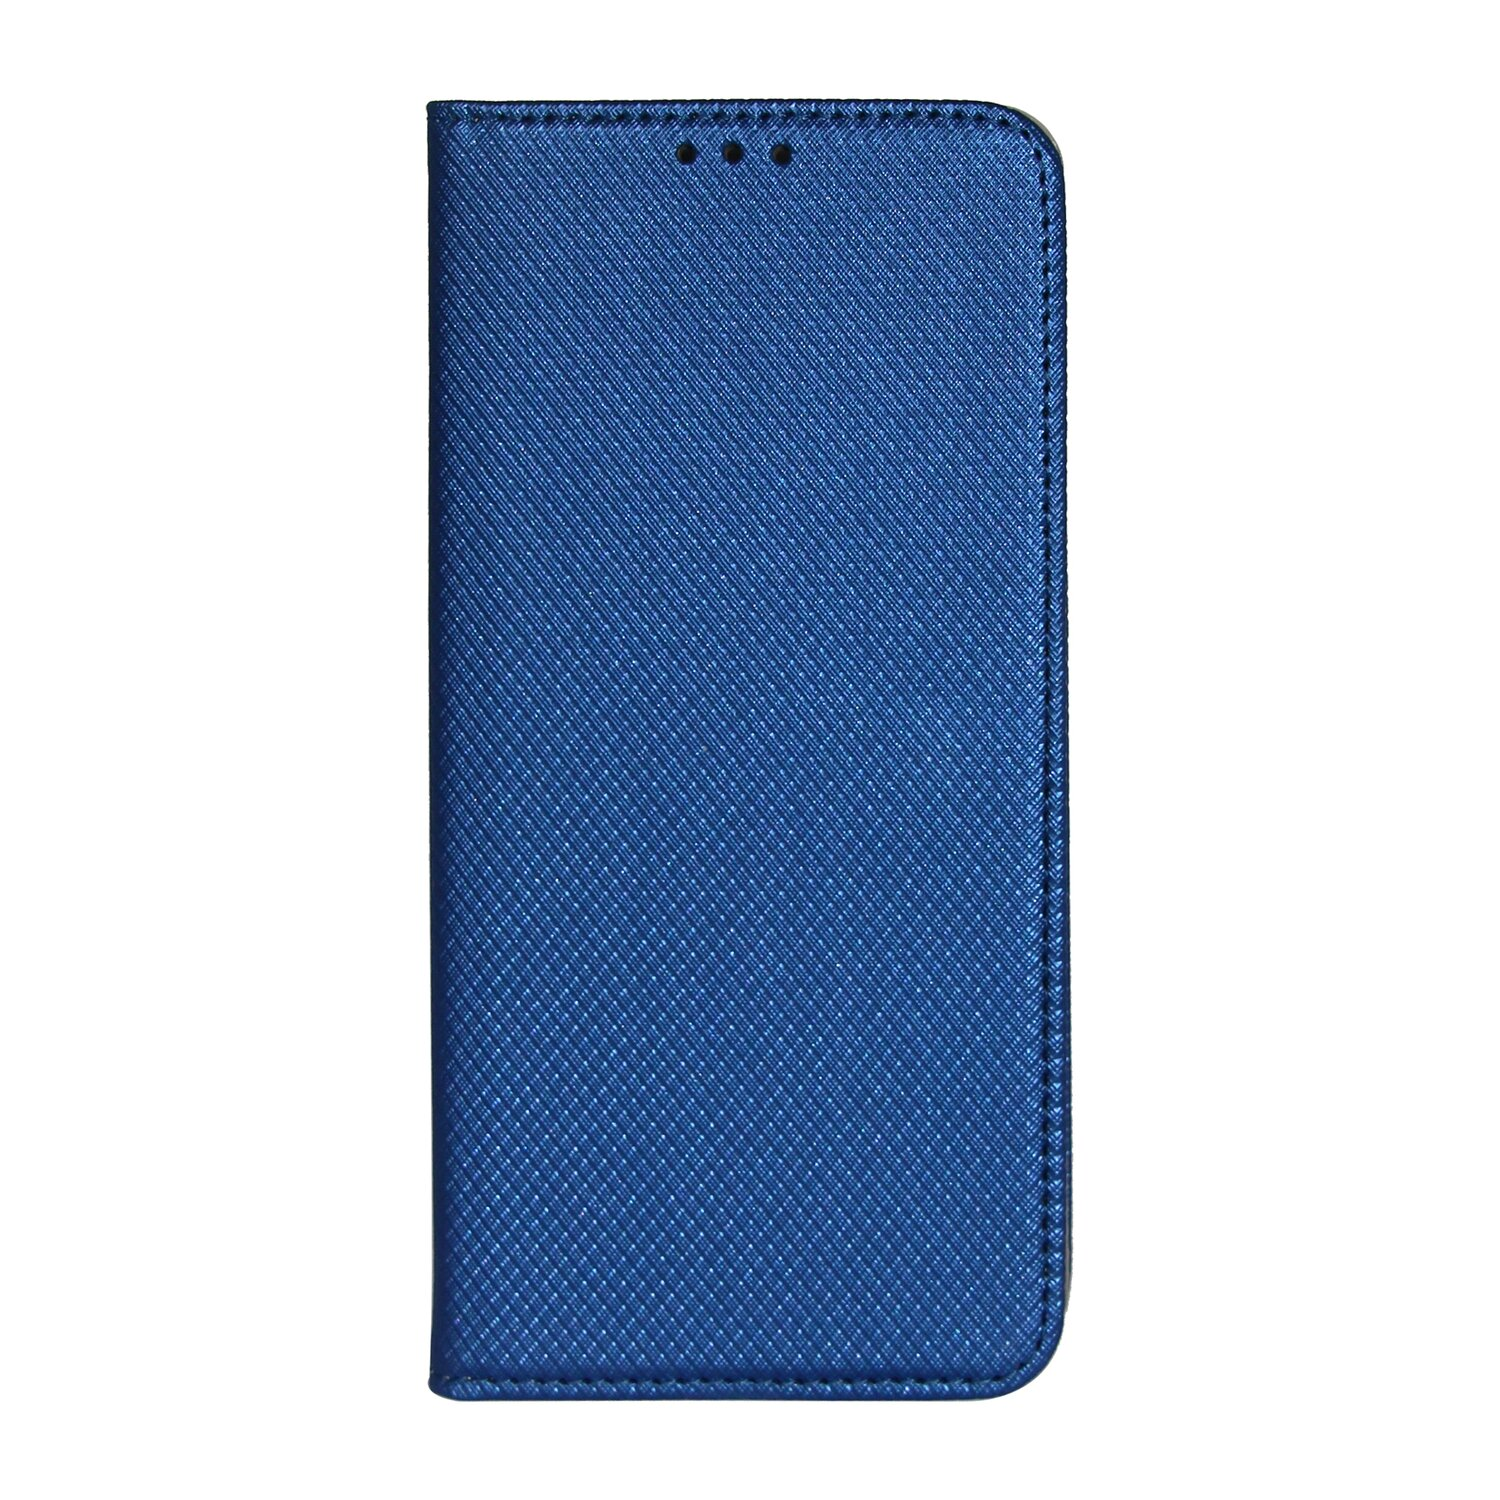 Bookcover, Samsung, Blau 4G, COFI Buch A22 Tasche,